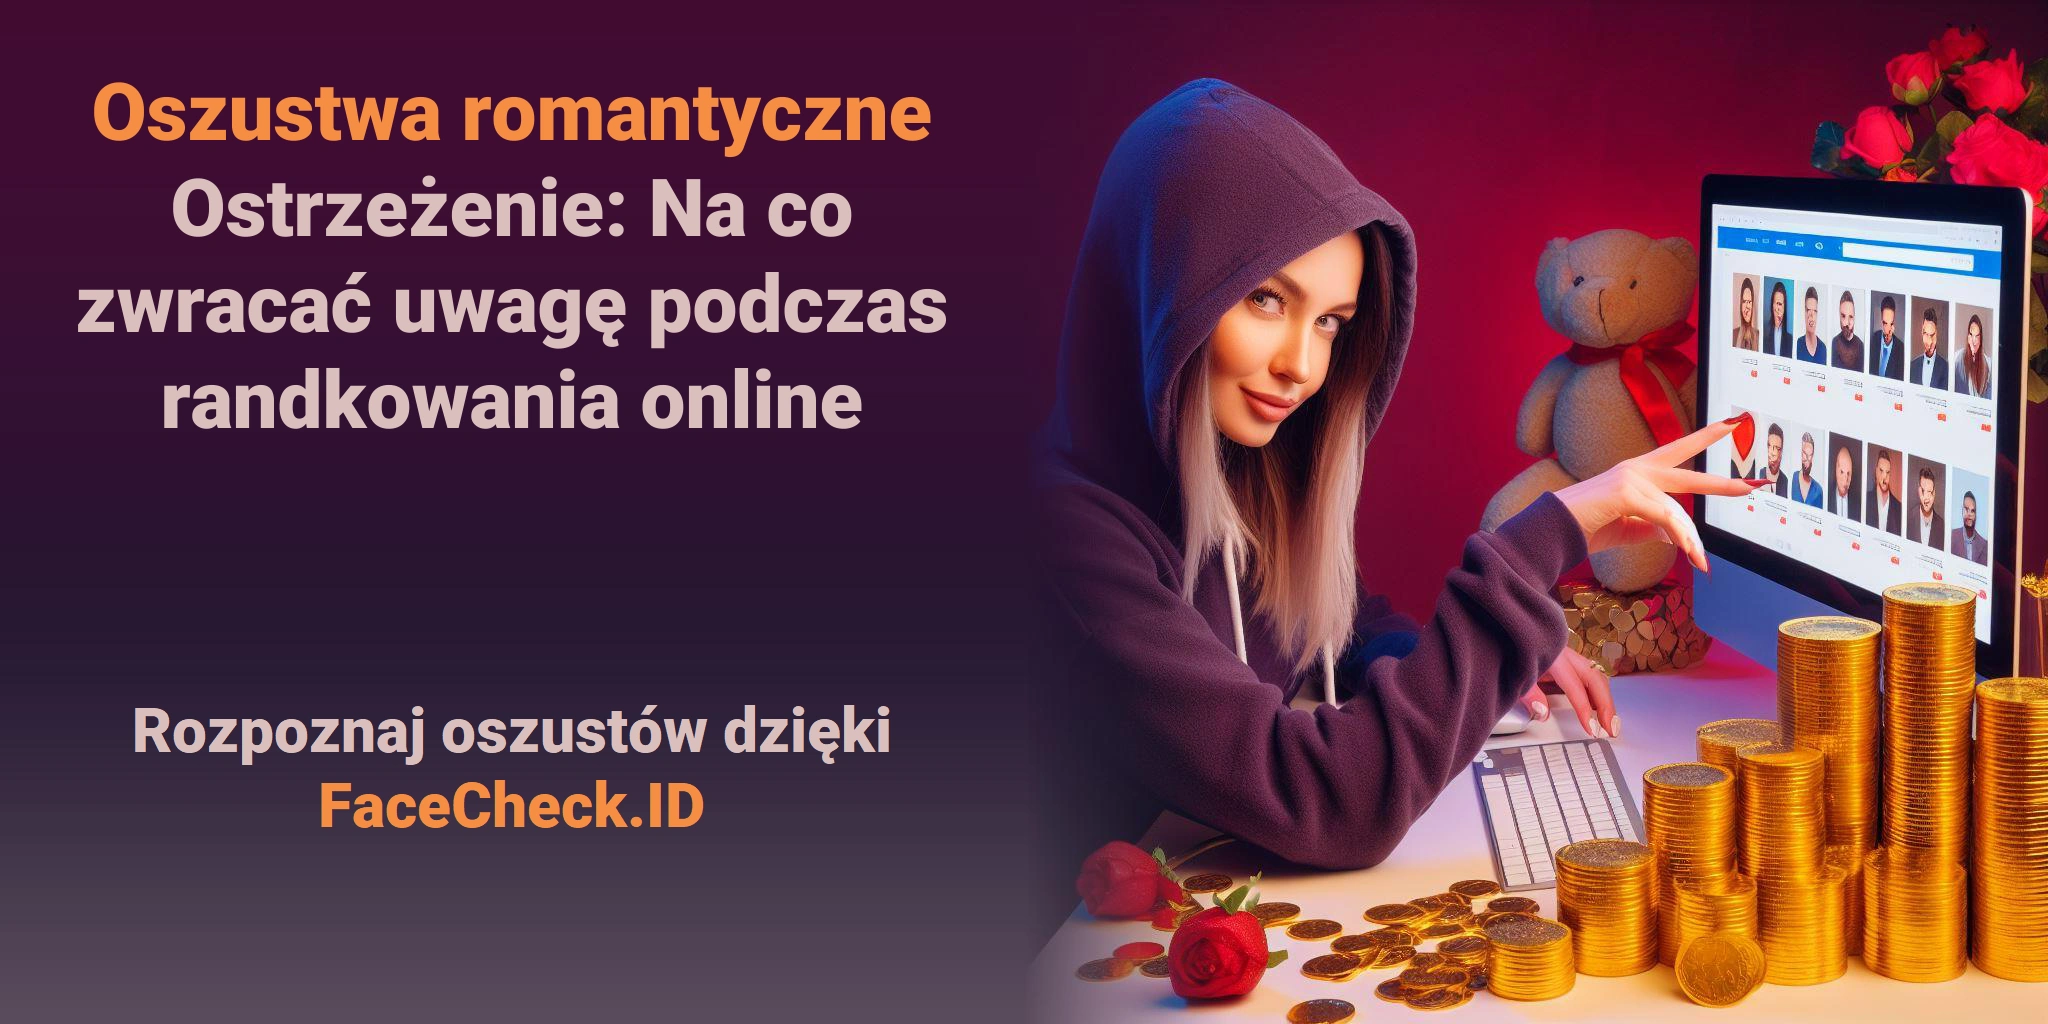 Oszustwa romantyczne Ostrzeżenie: Na co zwracać uwagę podczas randkowania online Rozpoznaj oszustów dzięki FaceCheck.ID